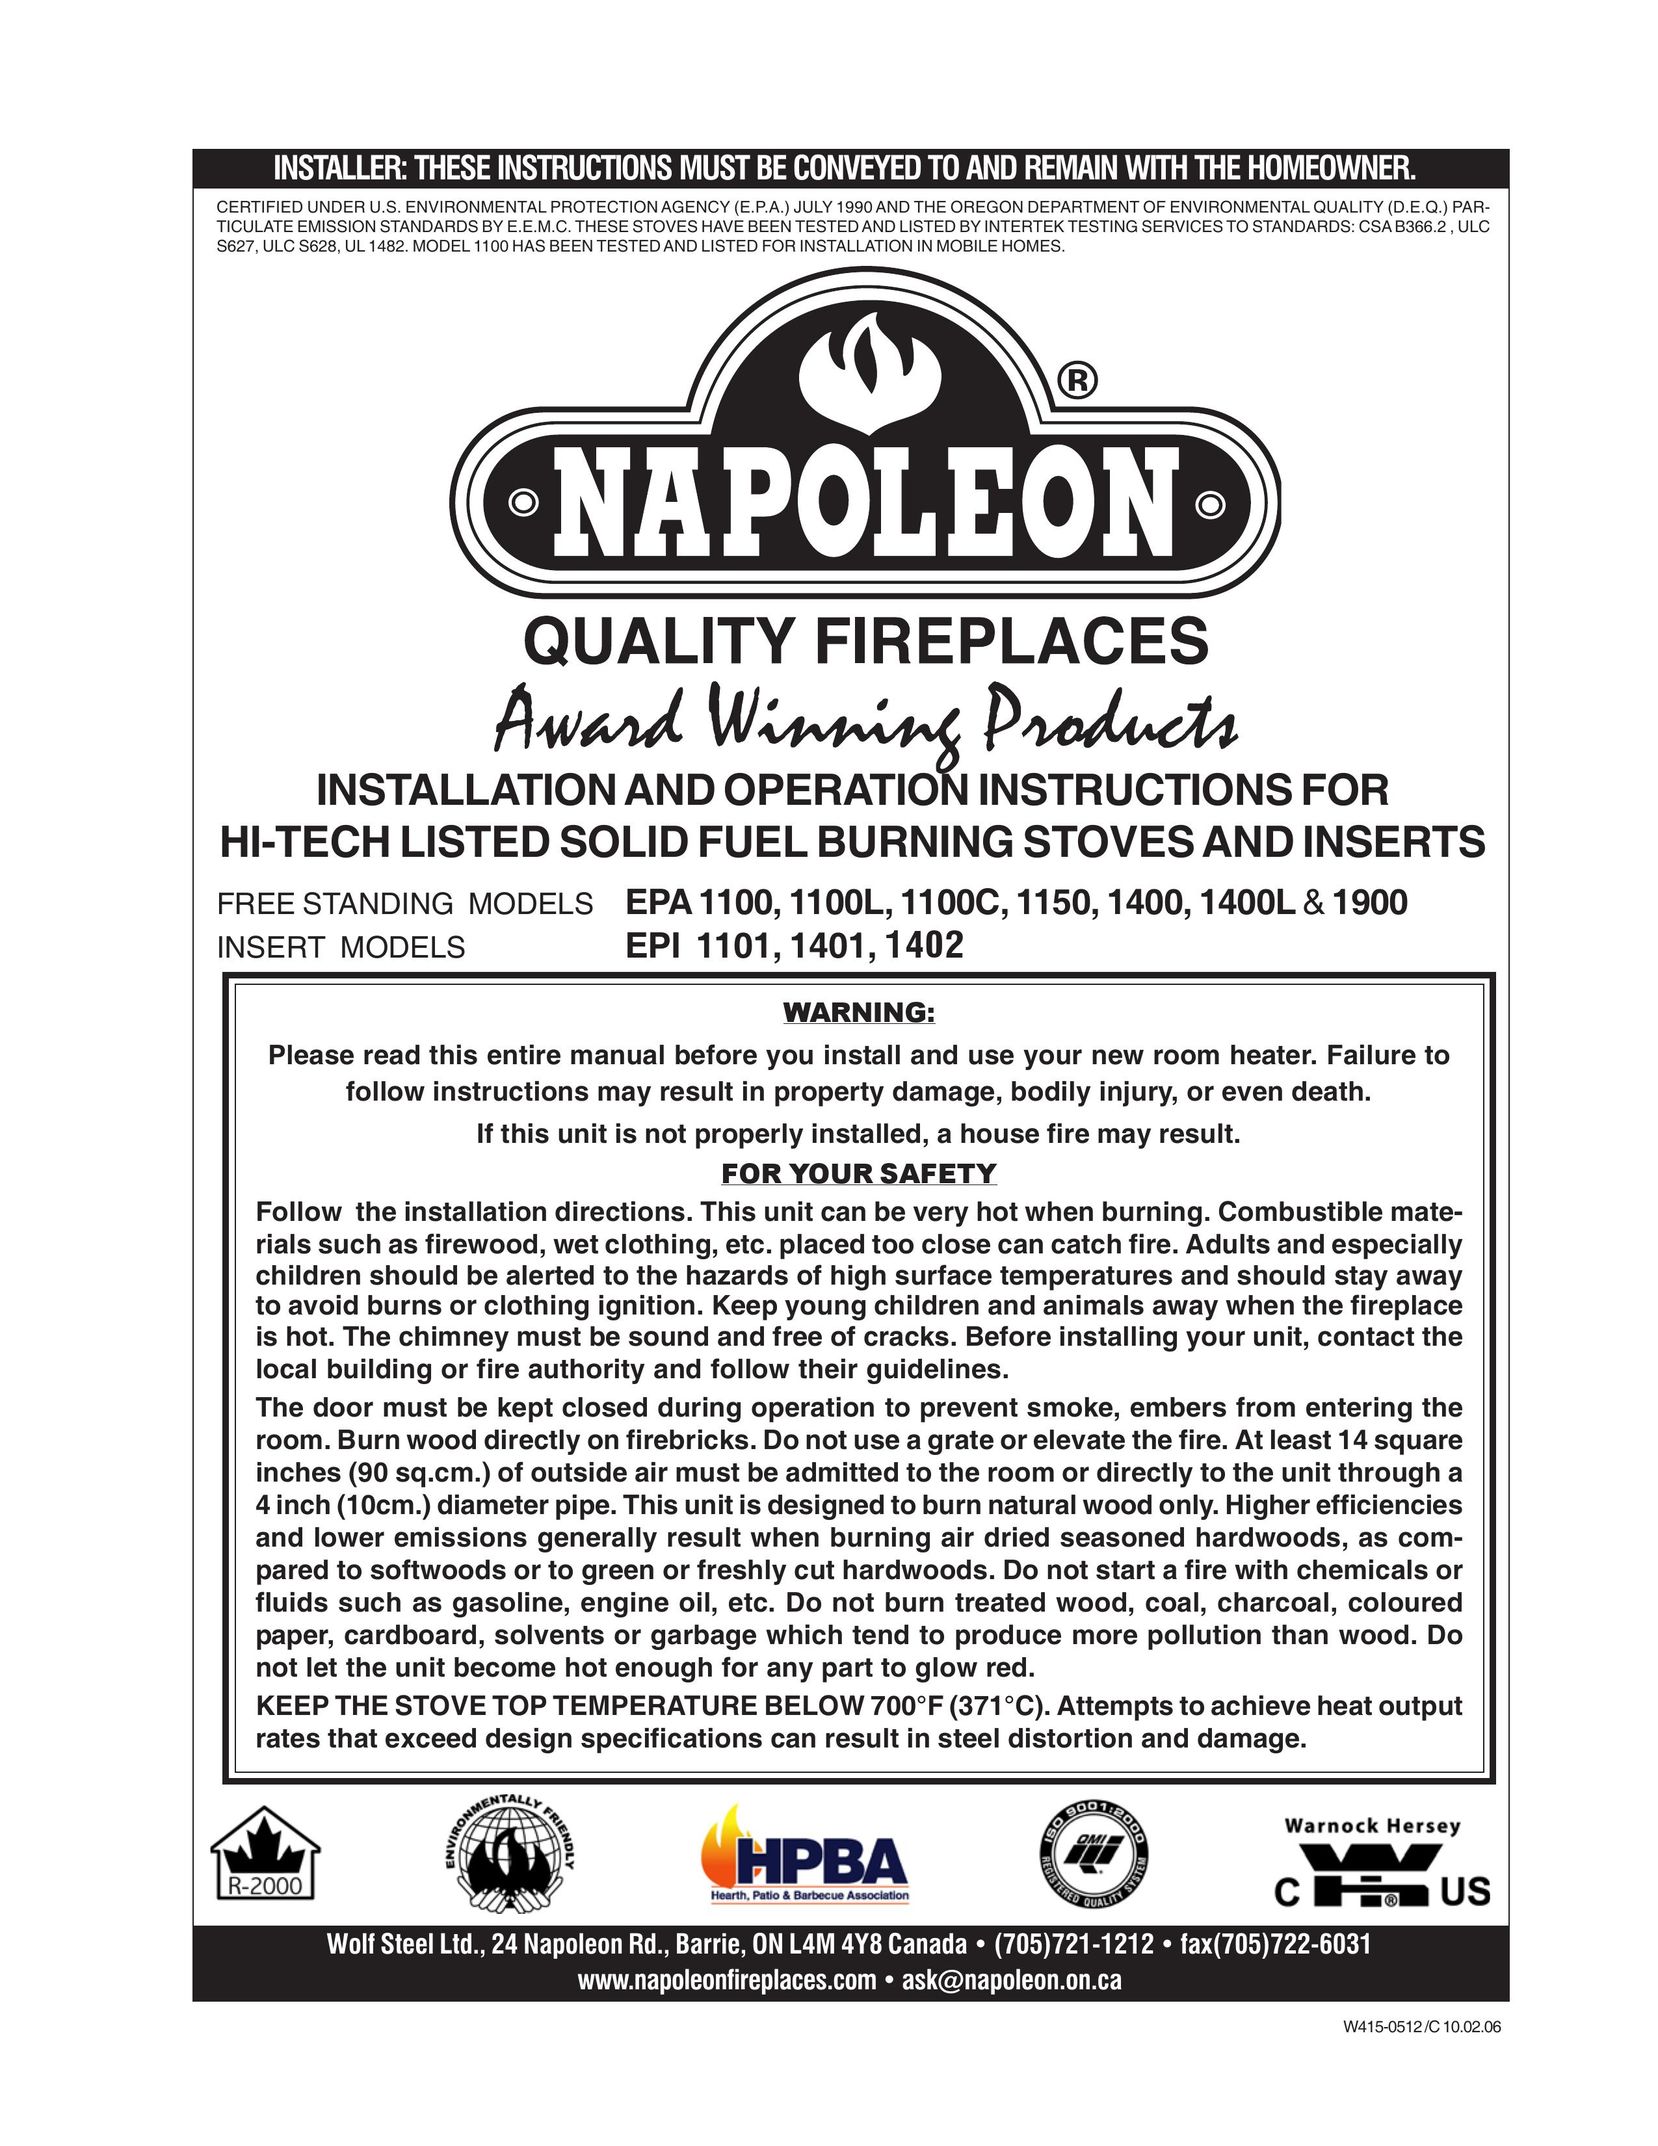 Napoleon Fireplaces EPA1150 Indoor Fireplace User Manual